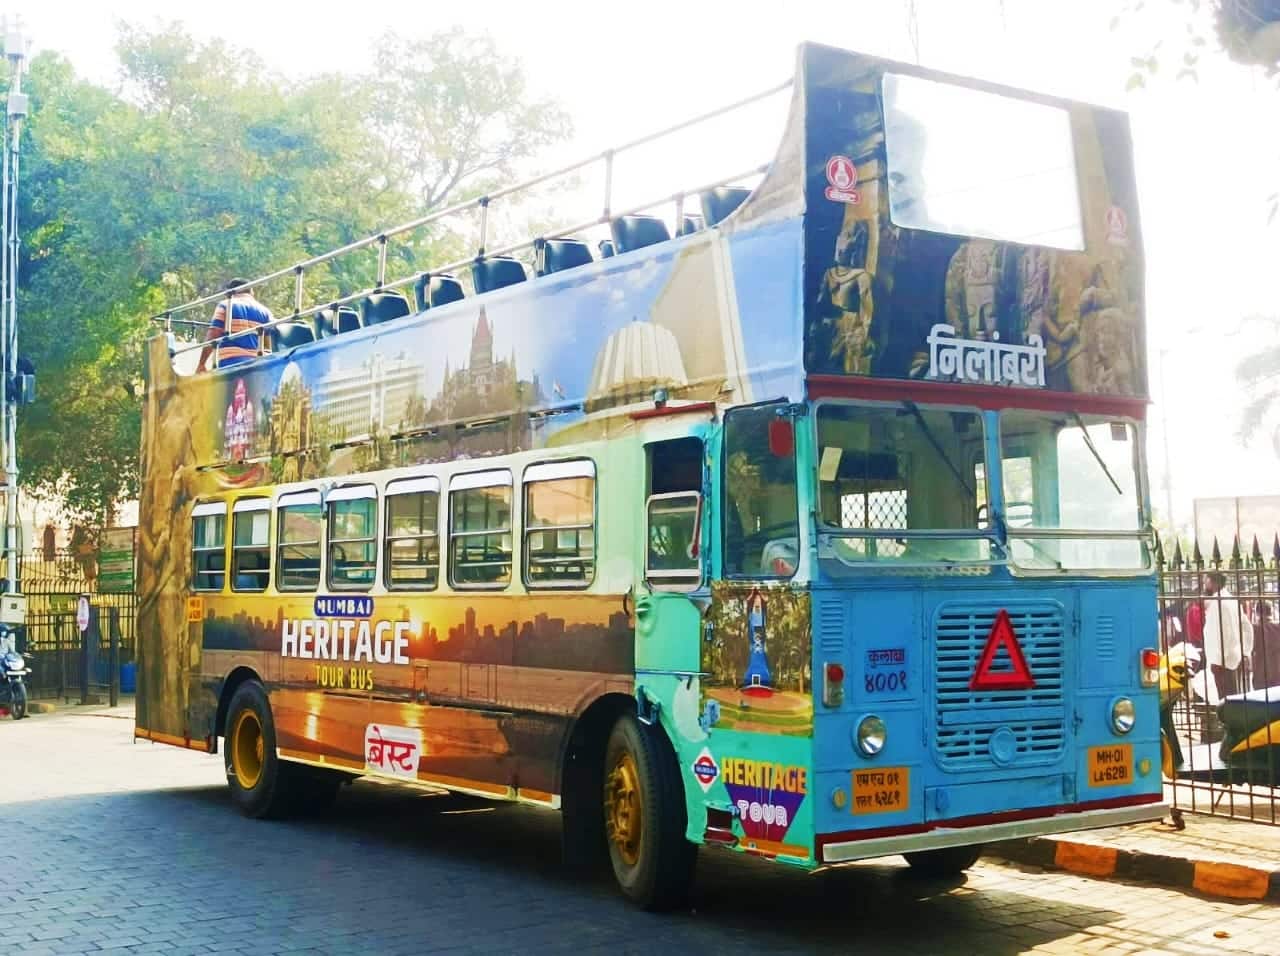 mumbai open bus tour booking